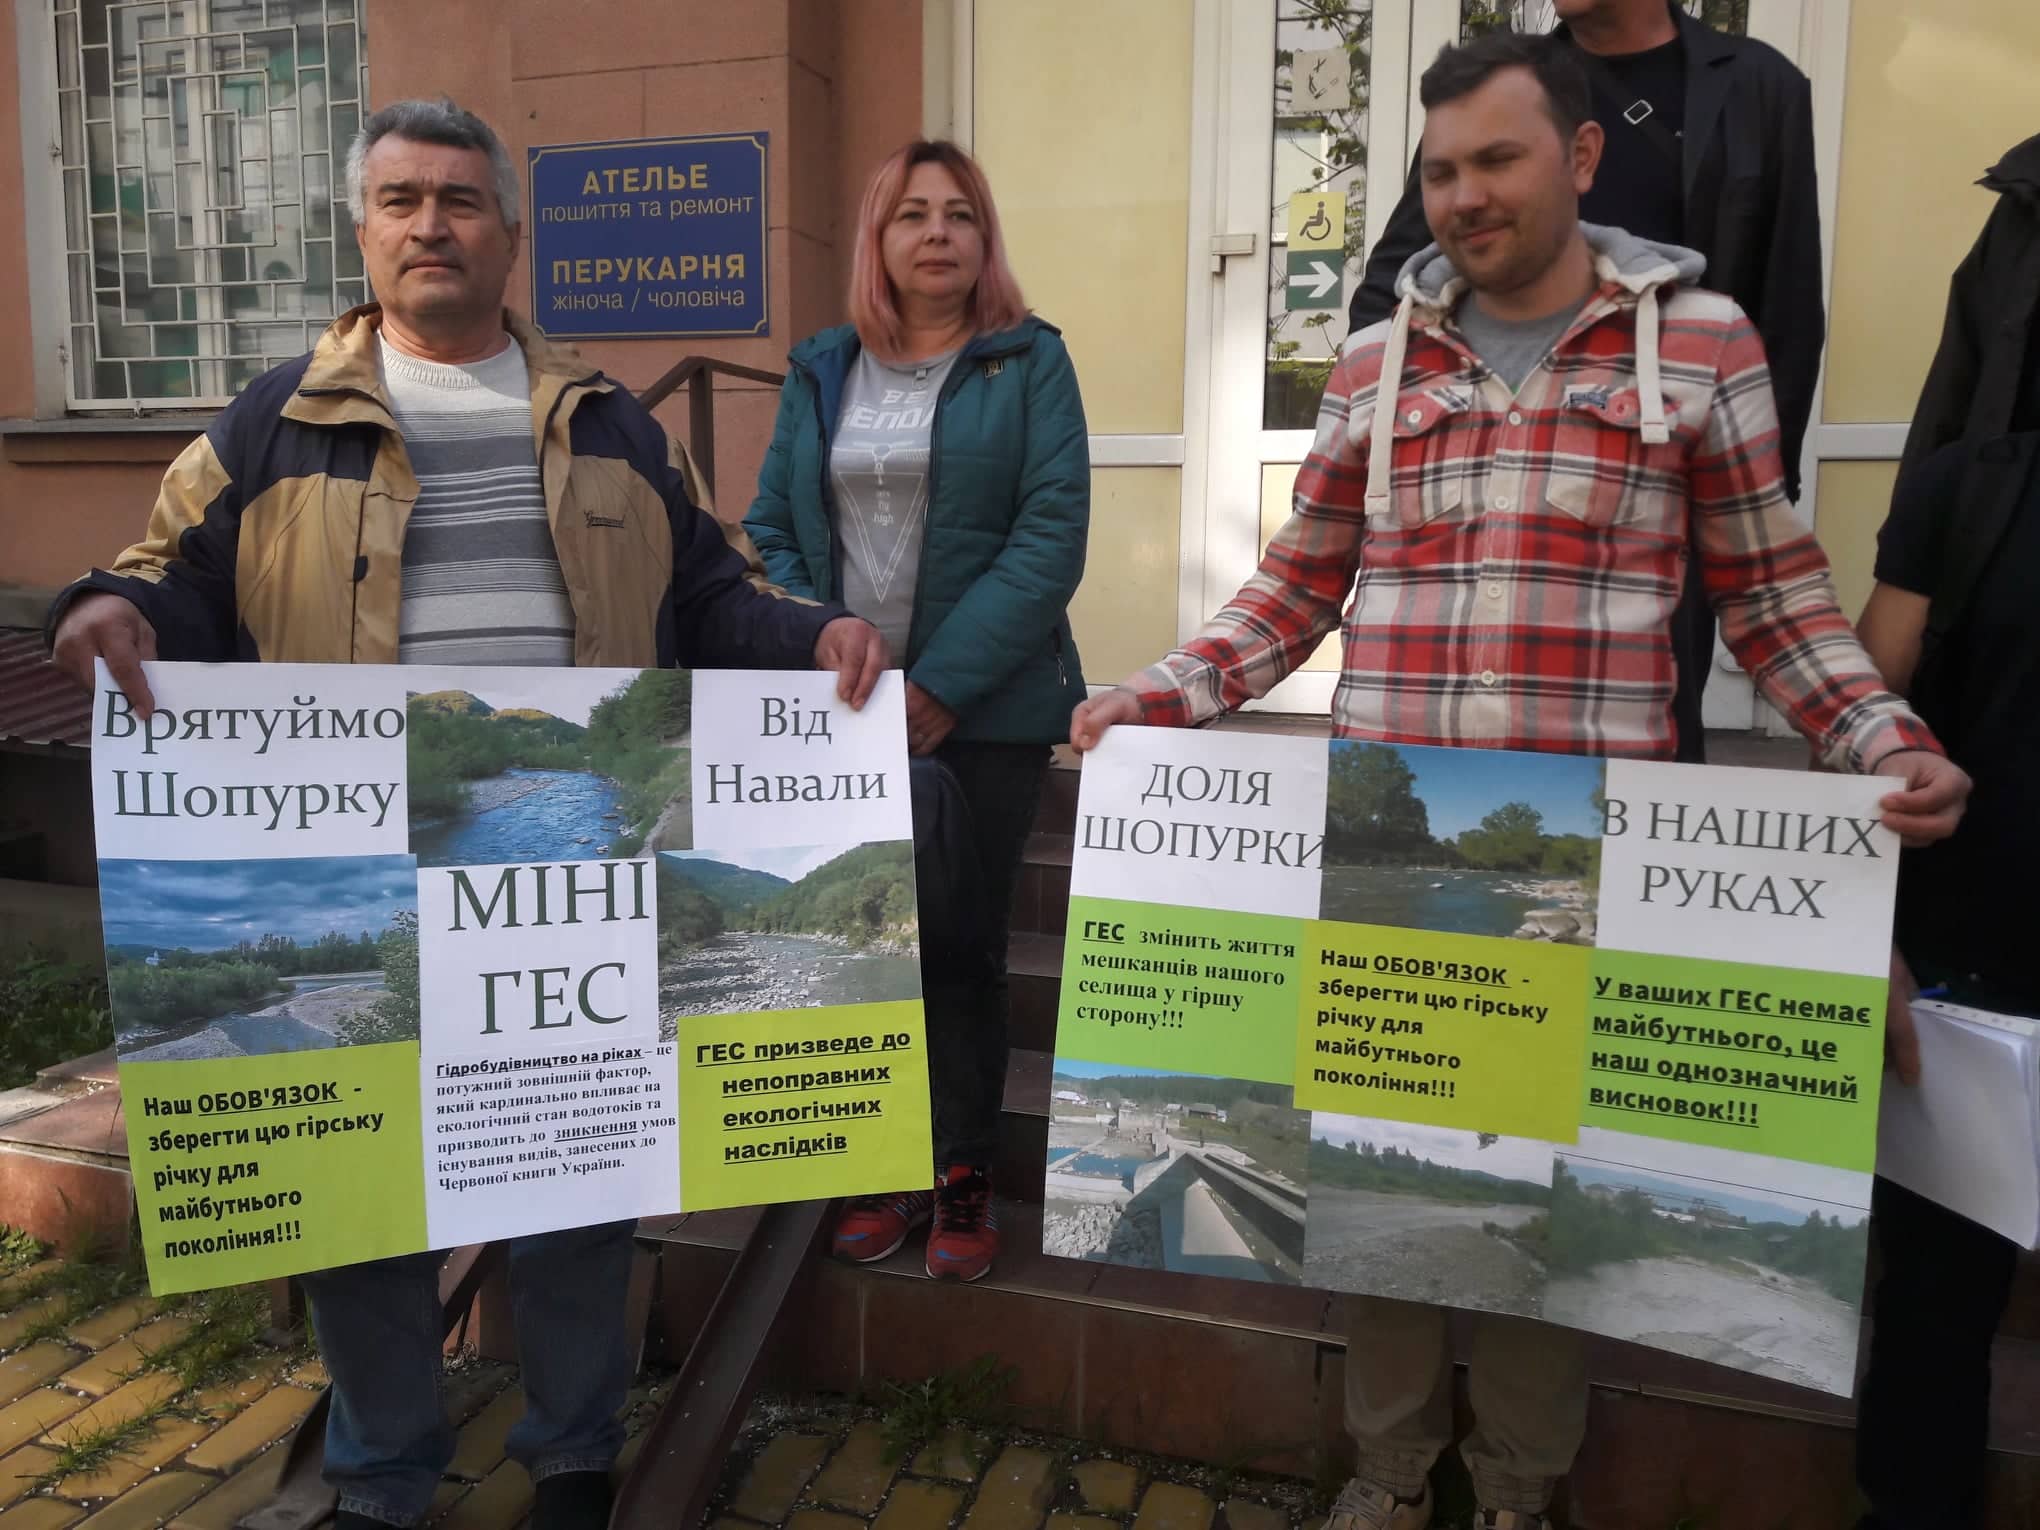 Сьогодні відбудуться суди по захисту парку з озером "Кірпічка" і площі Б.Хмельницького в Ужгороді та річки Шопурка на Рахівщині